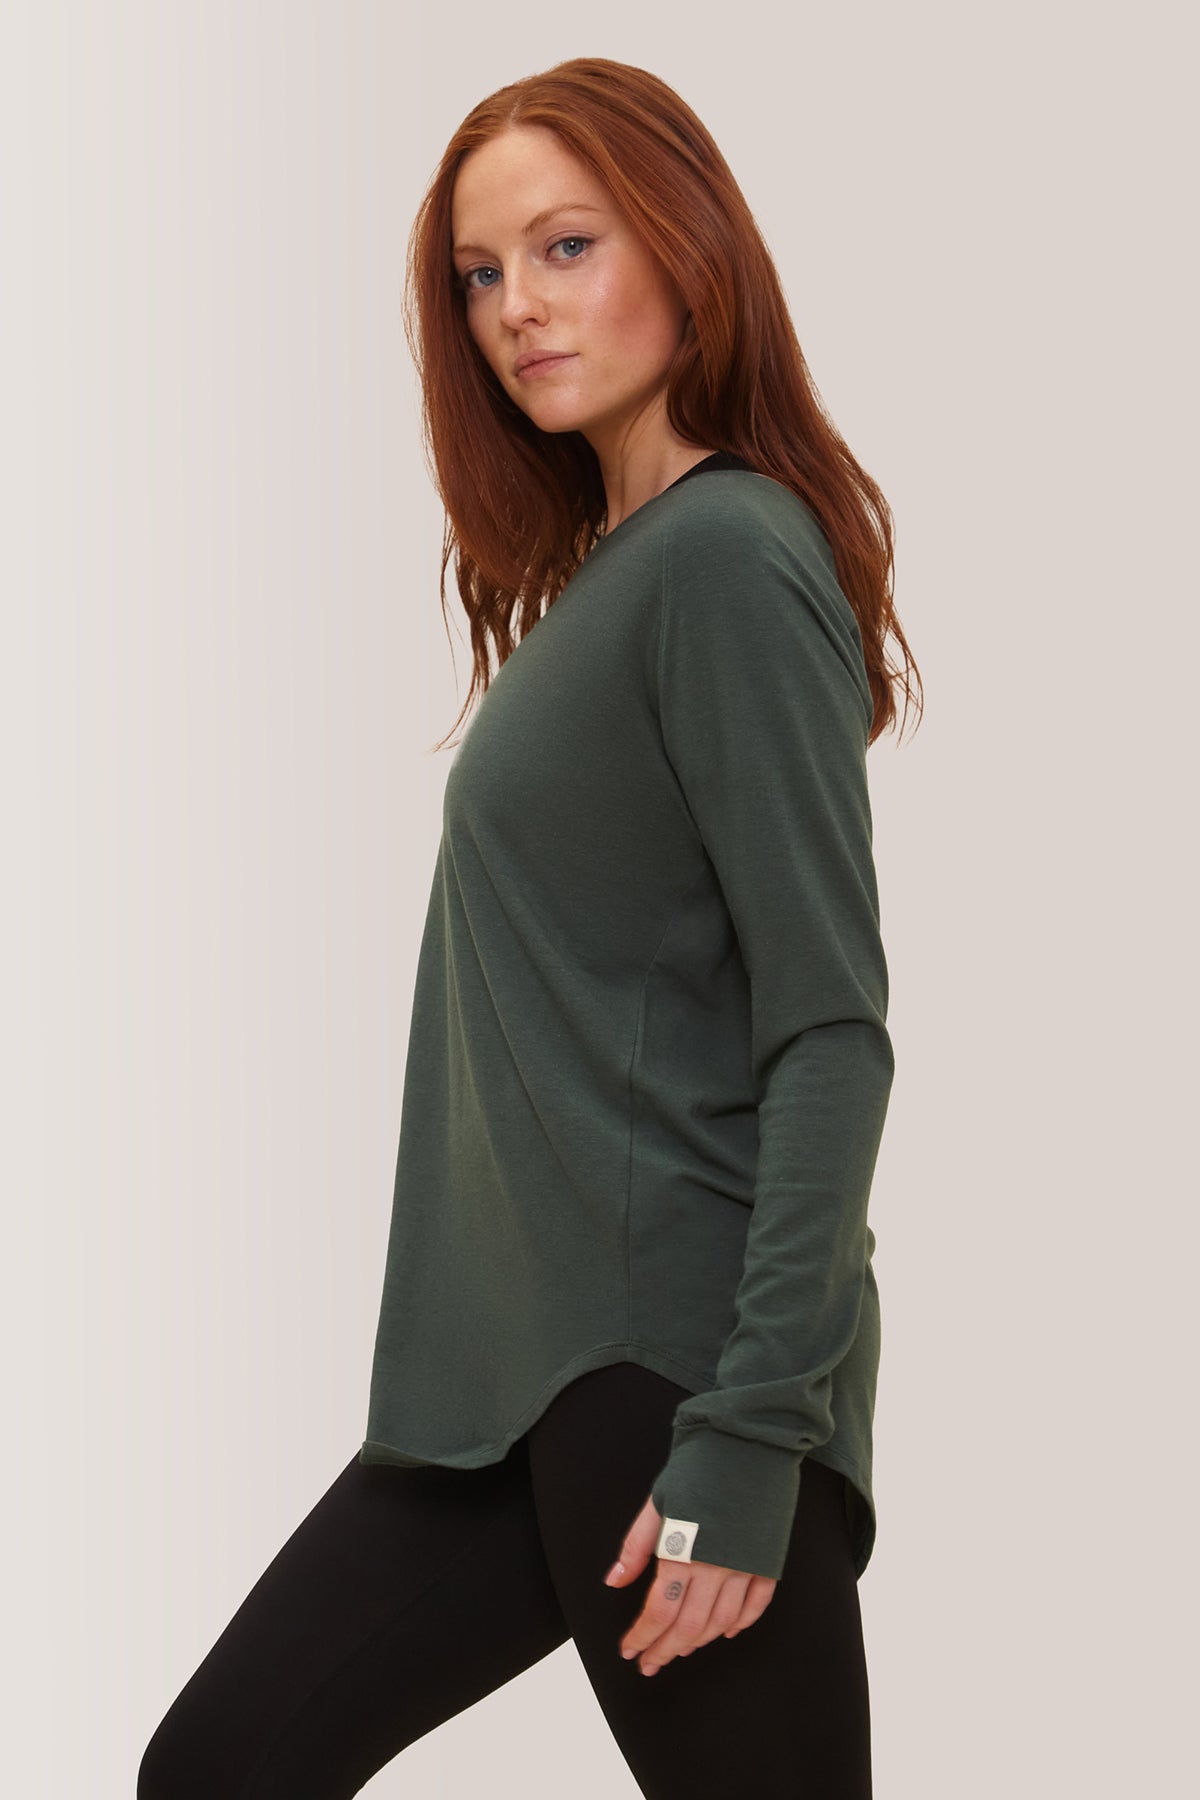 Femme qui porte le chandail à manche longue Cozy de Rose Boreal./ Women wearing the Cozy Long Sleeve Shirt by Rose Boreal. -Pine